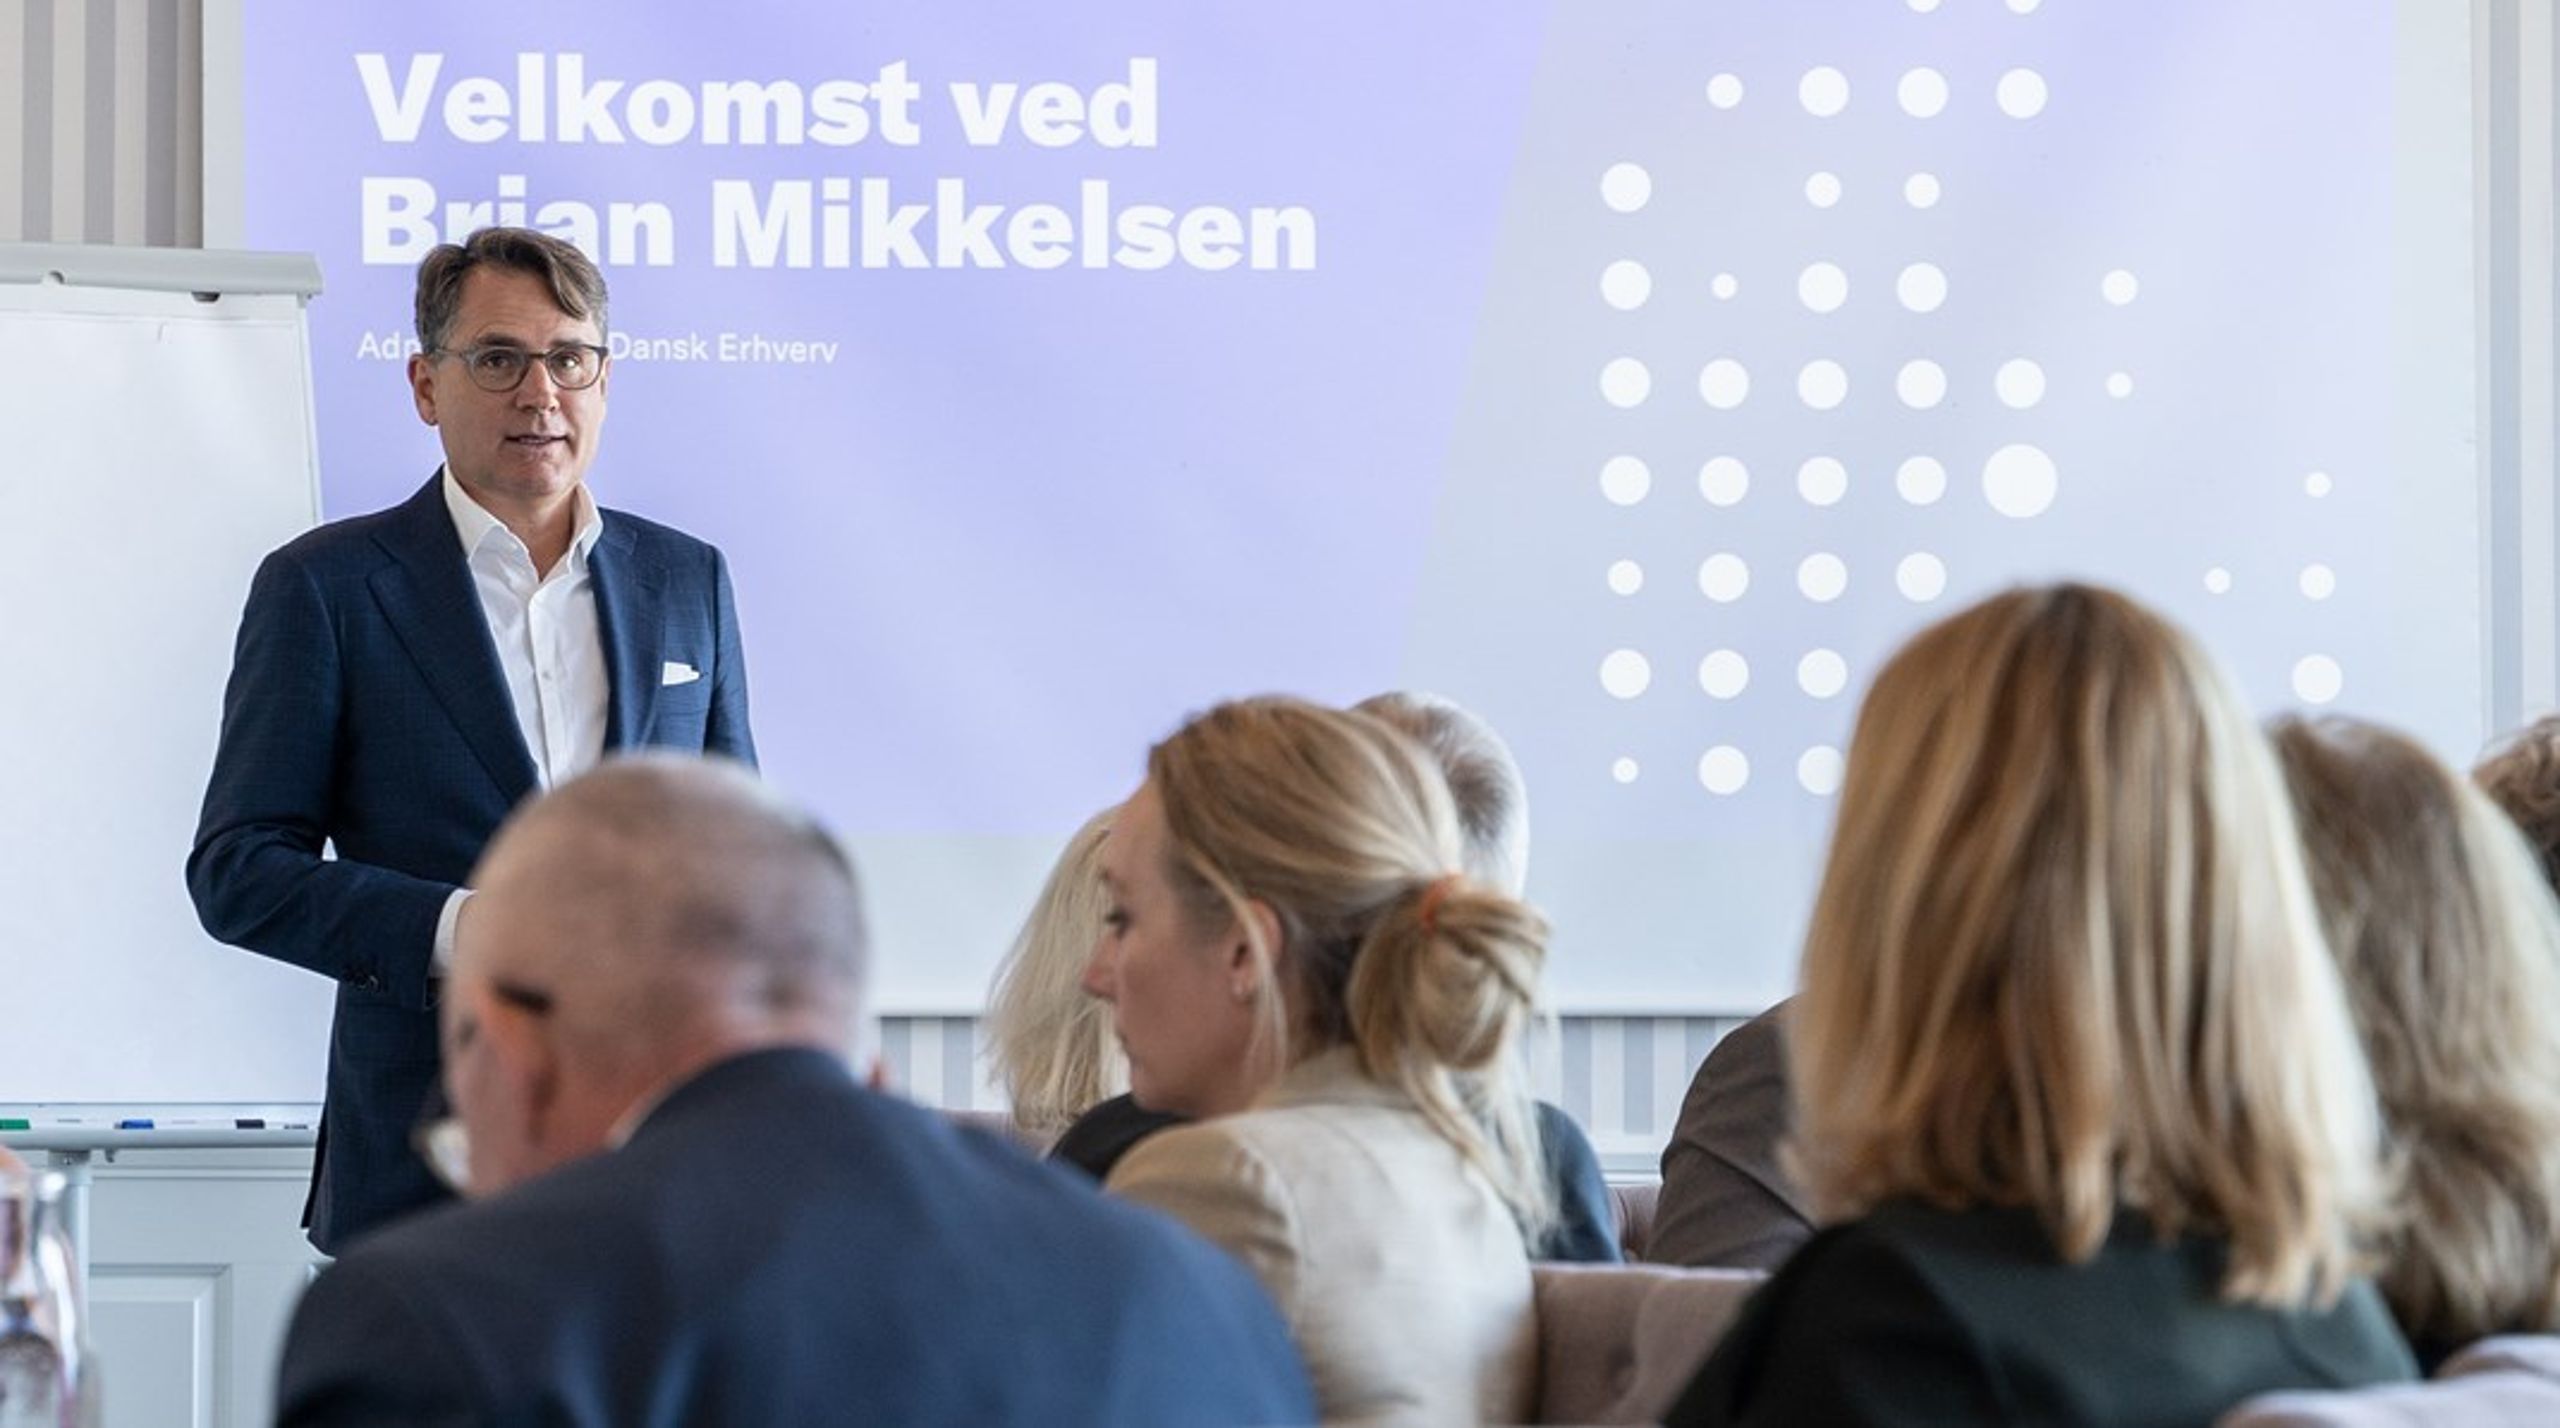 Da Dansk Erhvervs Velfærdsråd gik i luften i starten af 2022 kaldte direktør Brian Mikkelsen den brændende demografiske platform for et åbent vindue for 'et åbent vindue til politisk anerkendelse for civilsamfundet.'